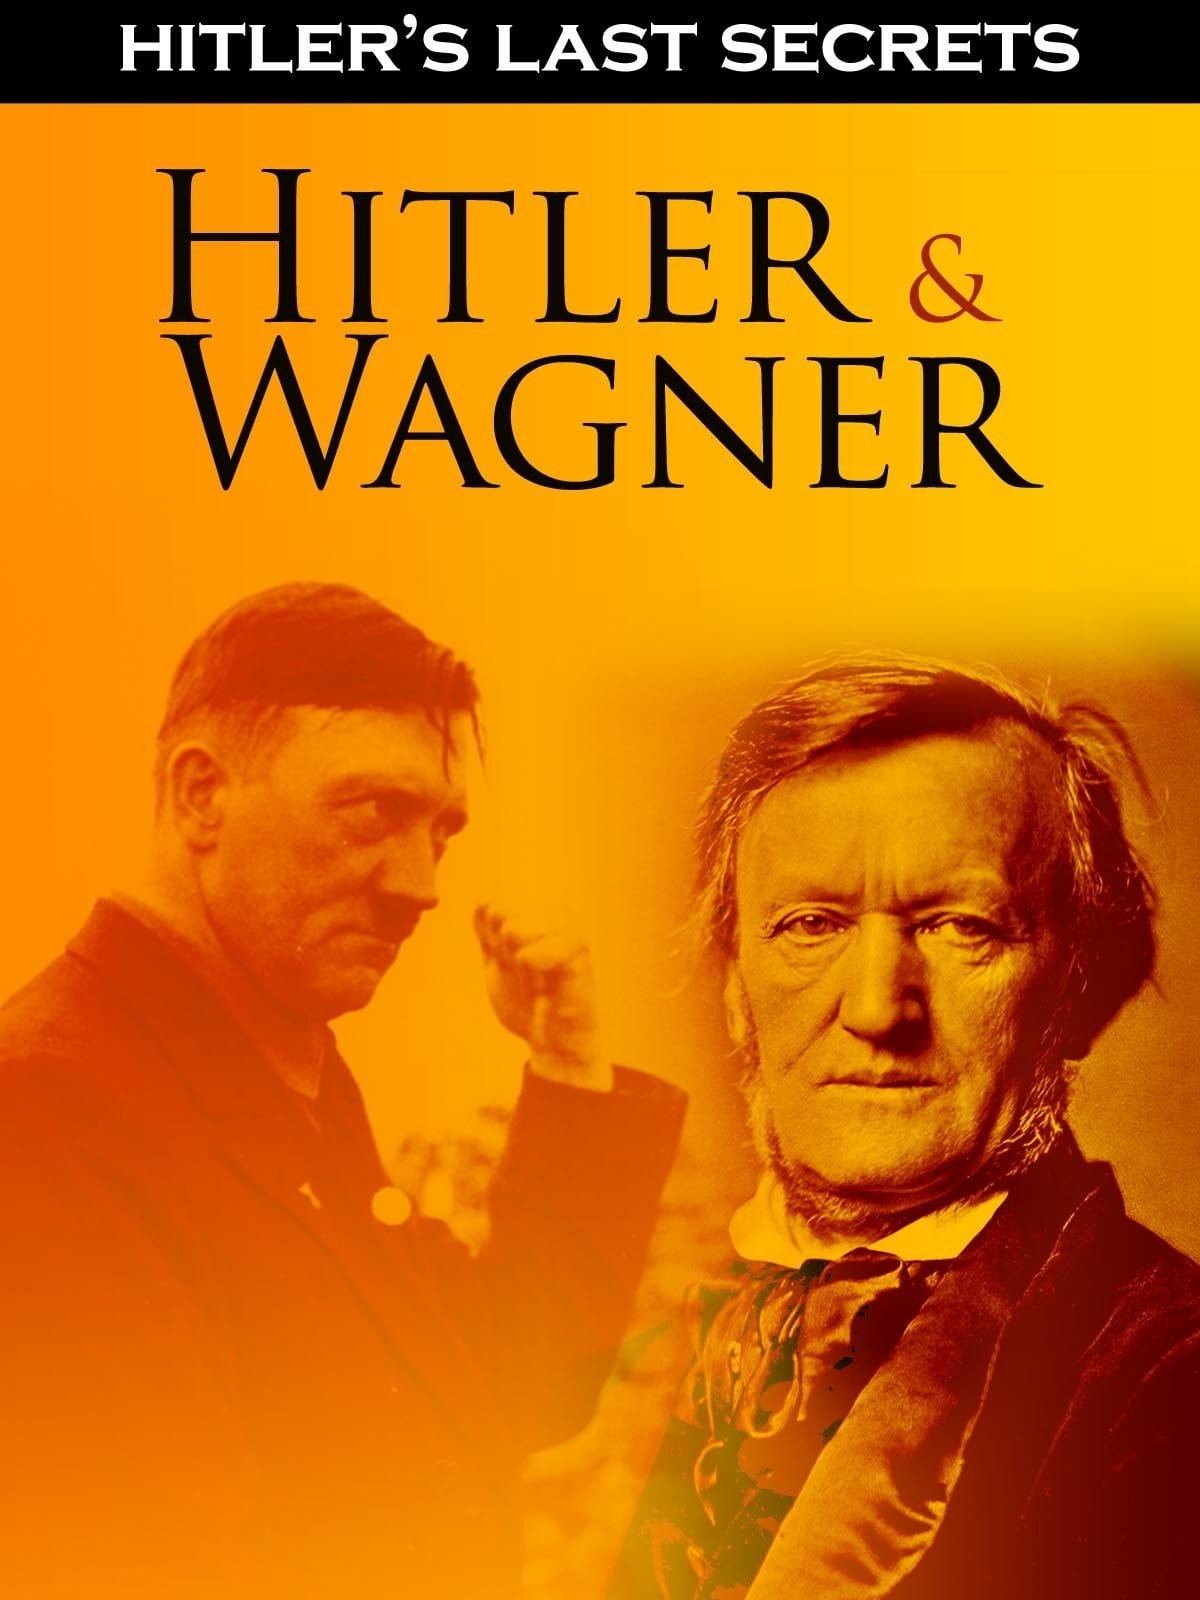 Hitler's Last Secrets: Hitler and Wagner (2015)